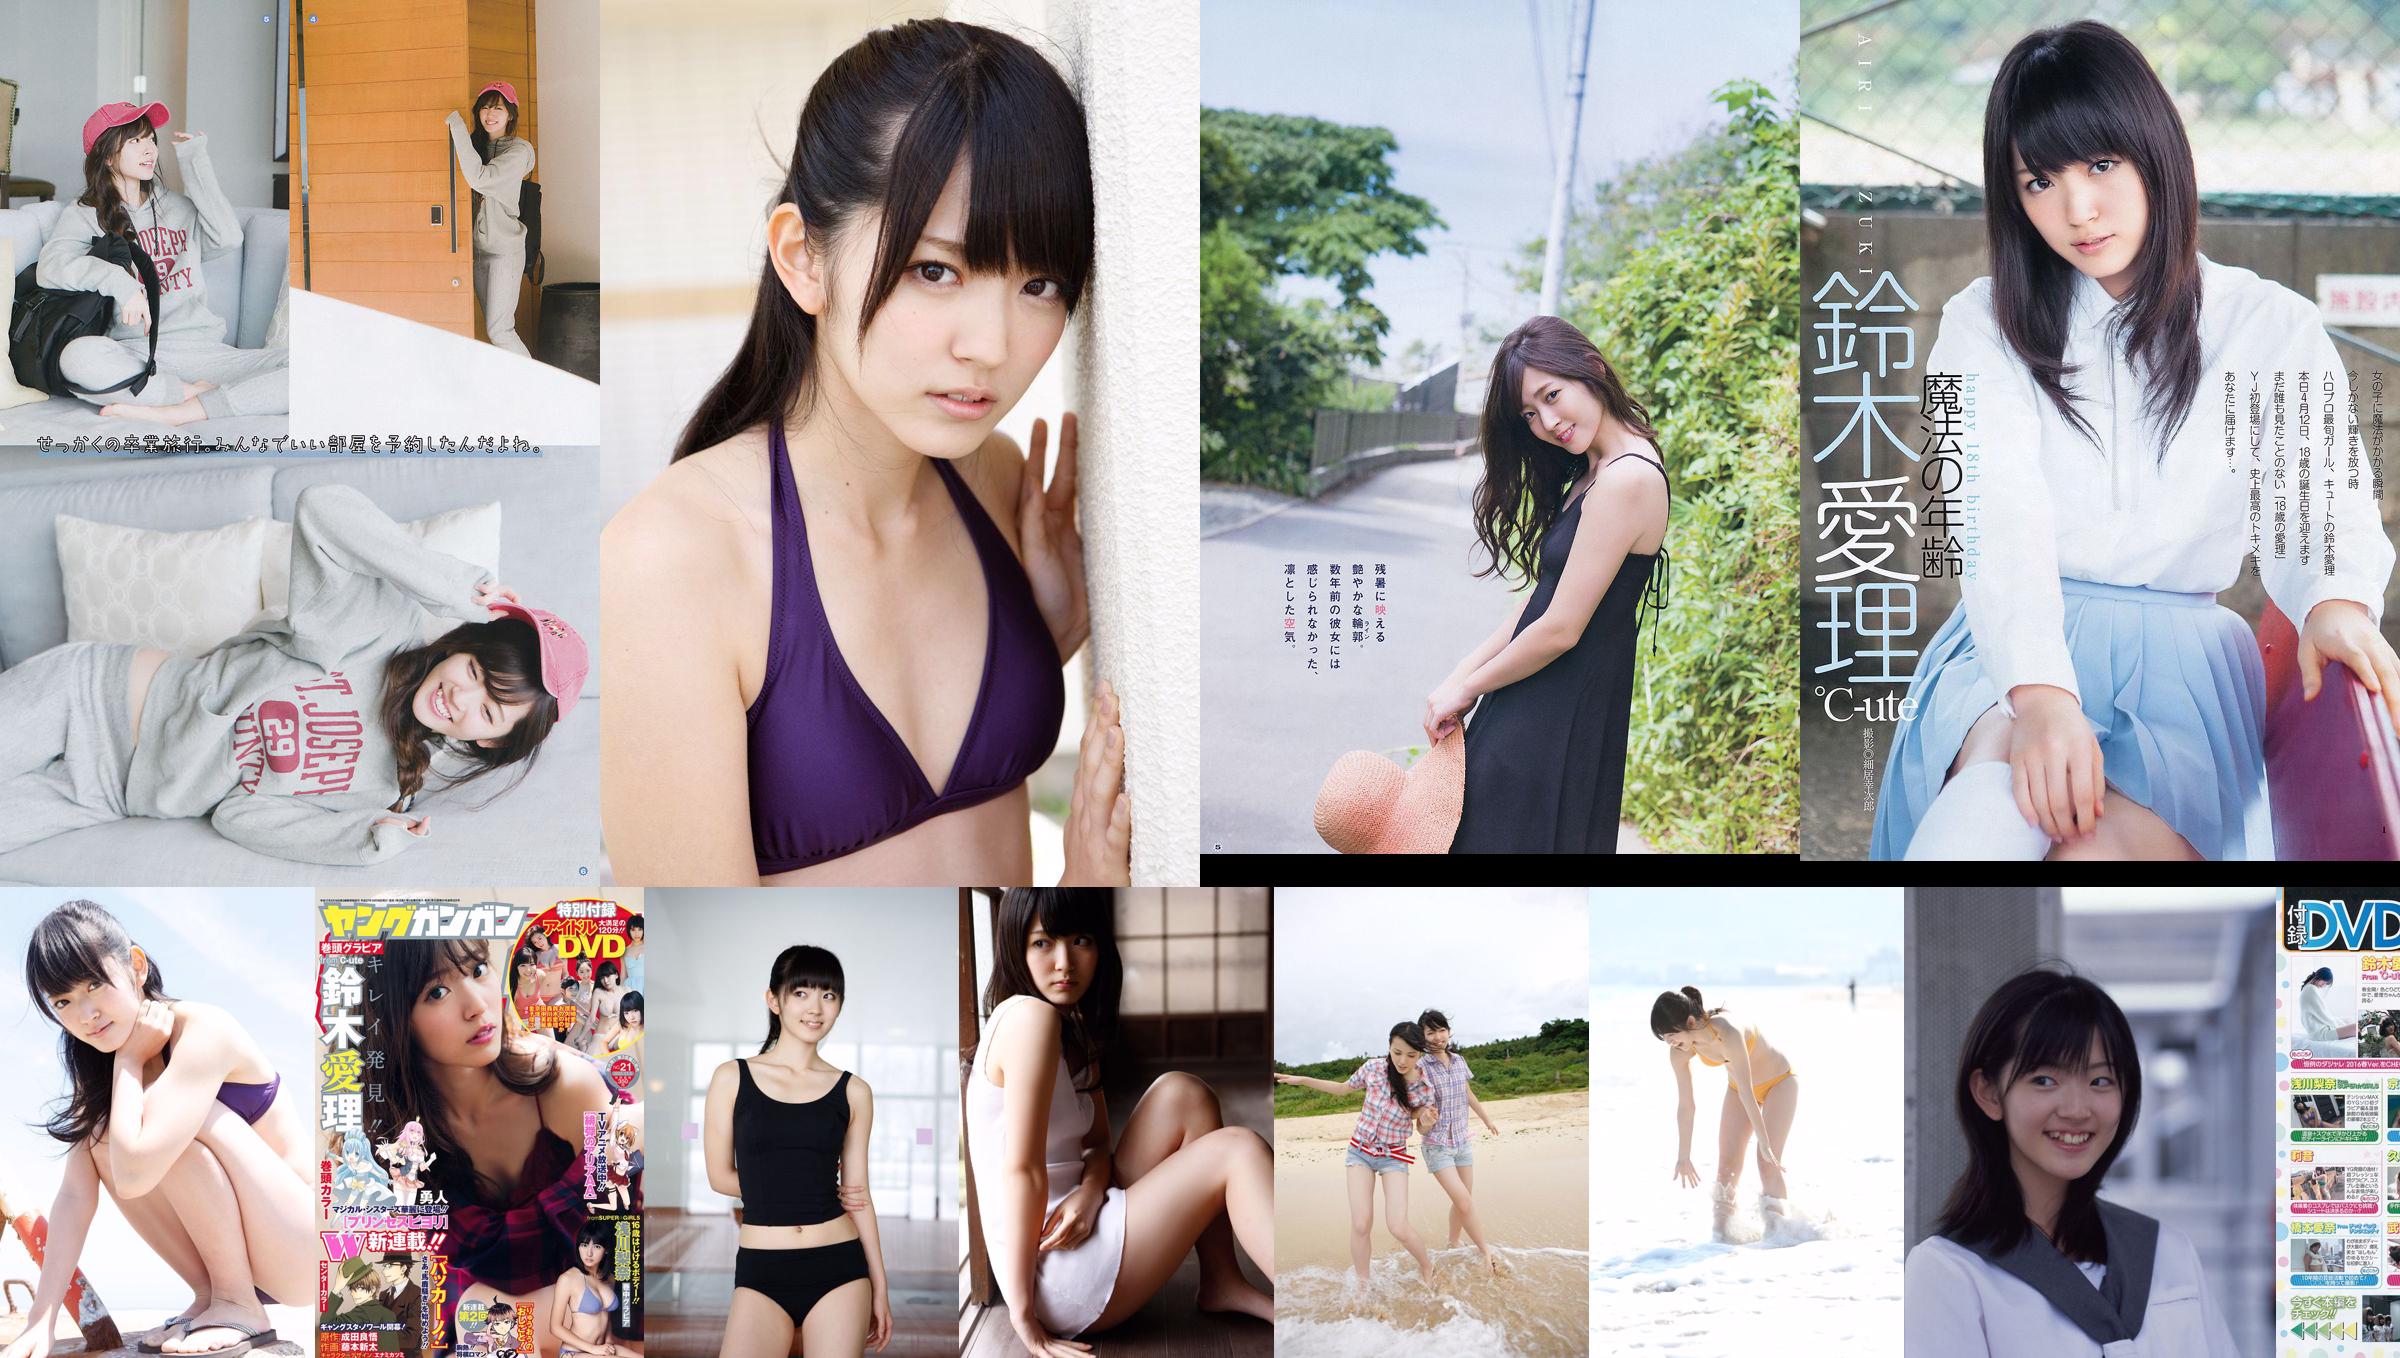 [Young Gangan] Suzuki Airi Asakawa Rina Fuji City Ann 2015 No.21 Photo Magazine No.b5b8a8 Page 1